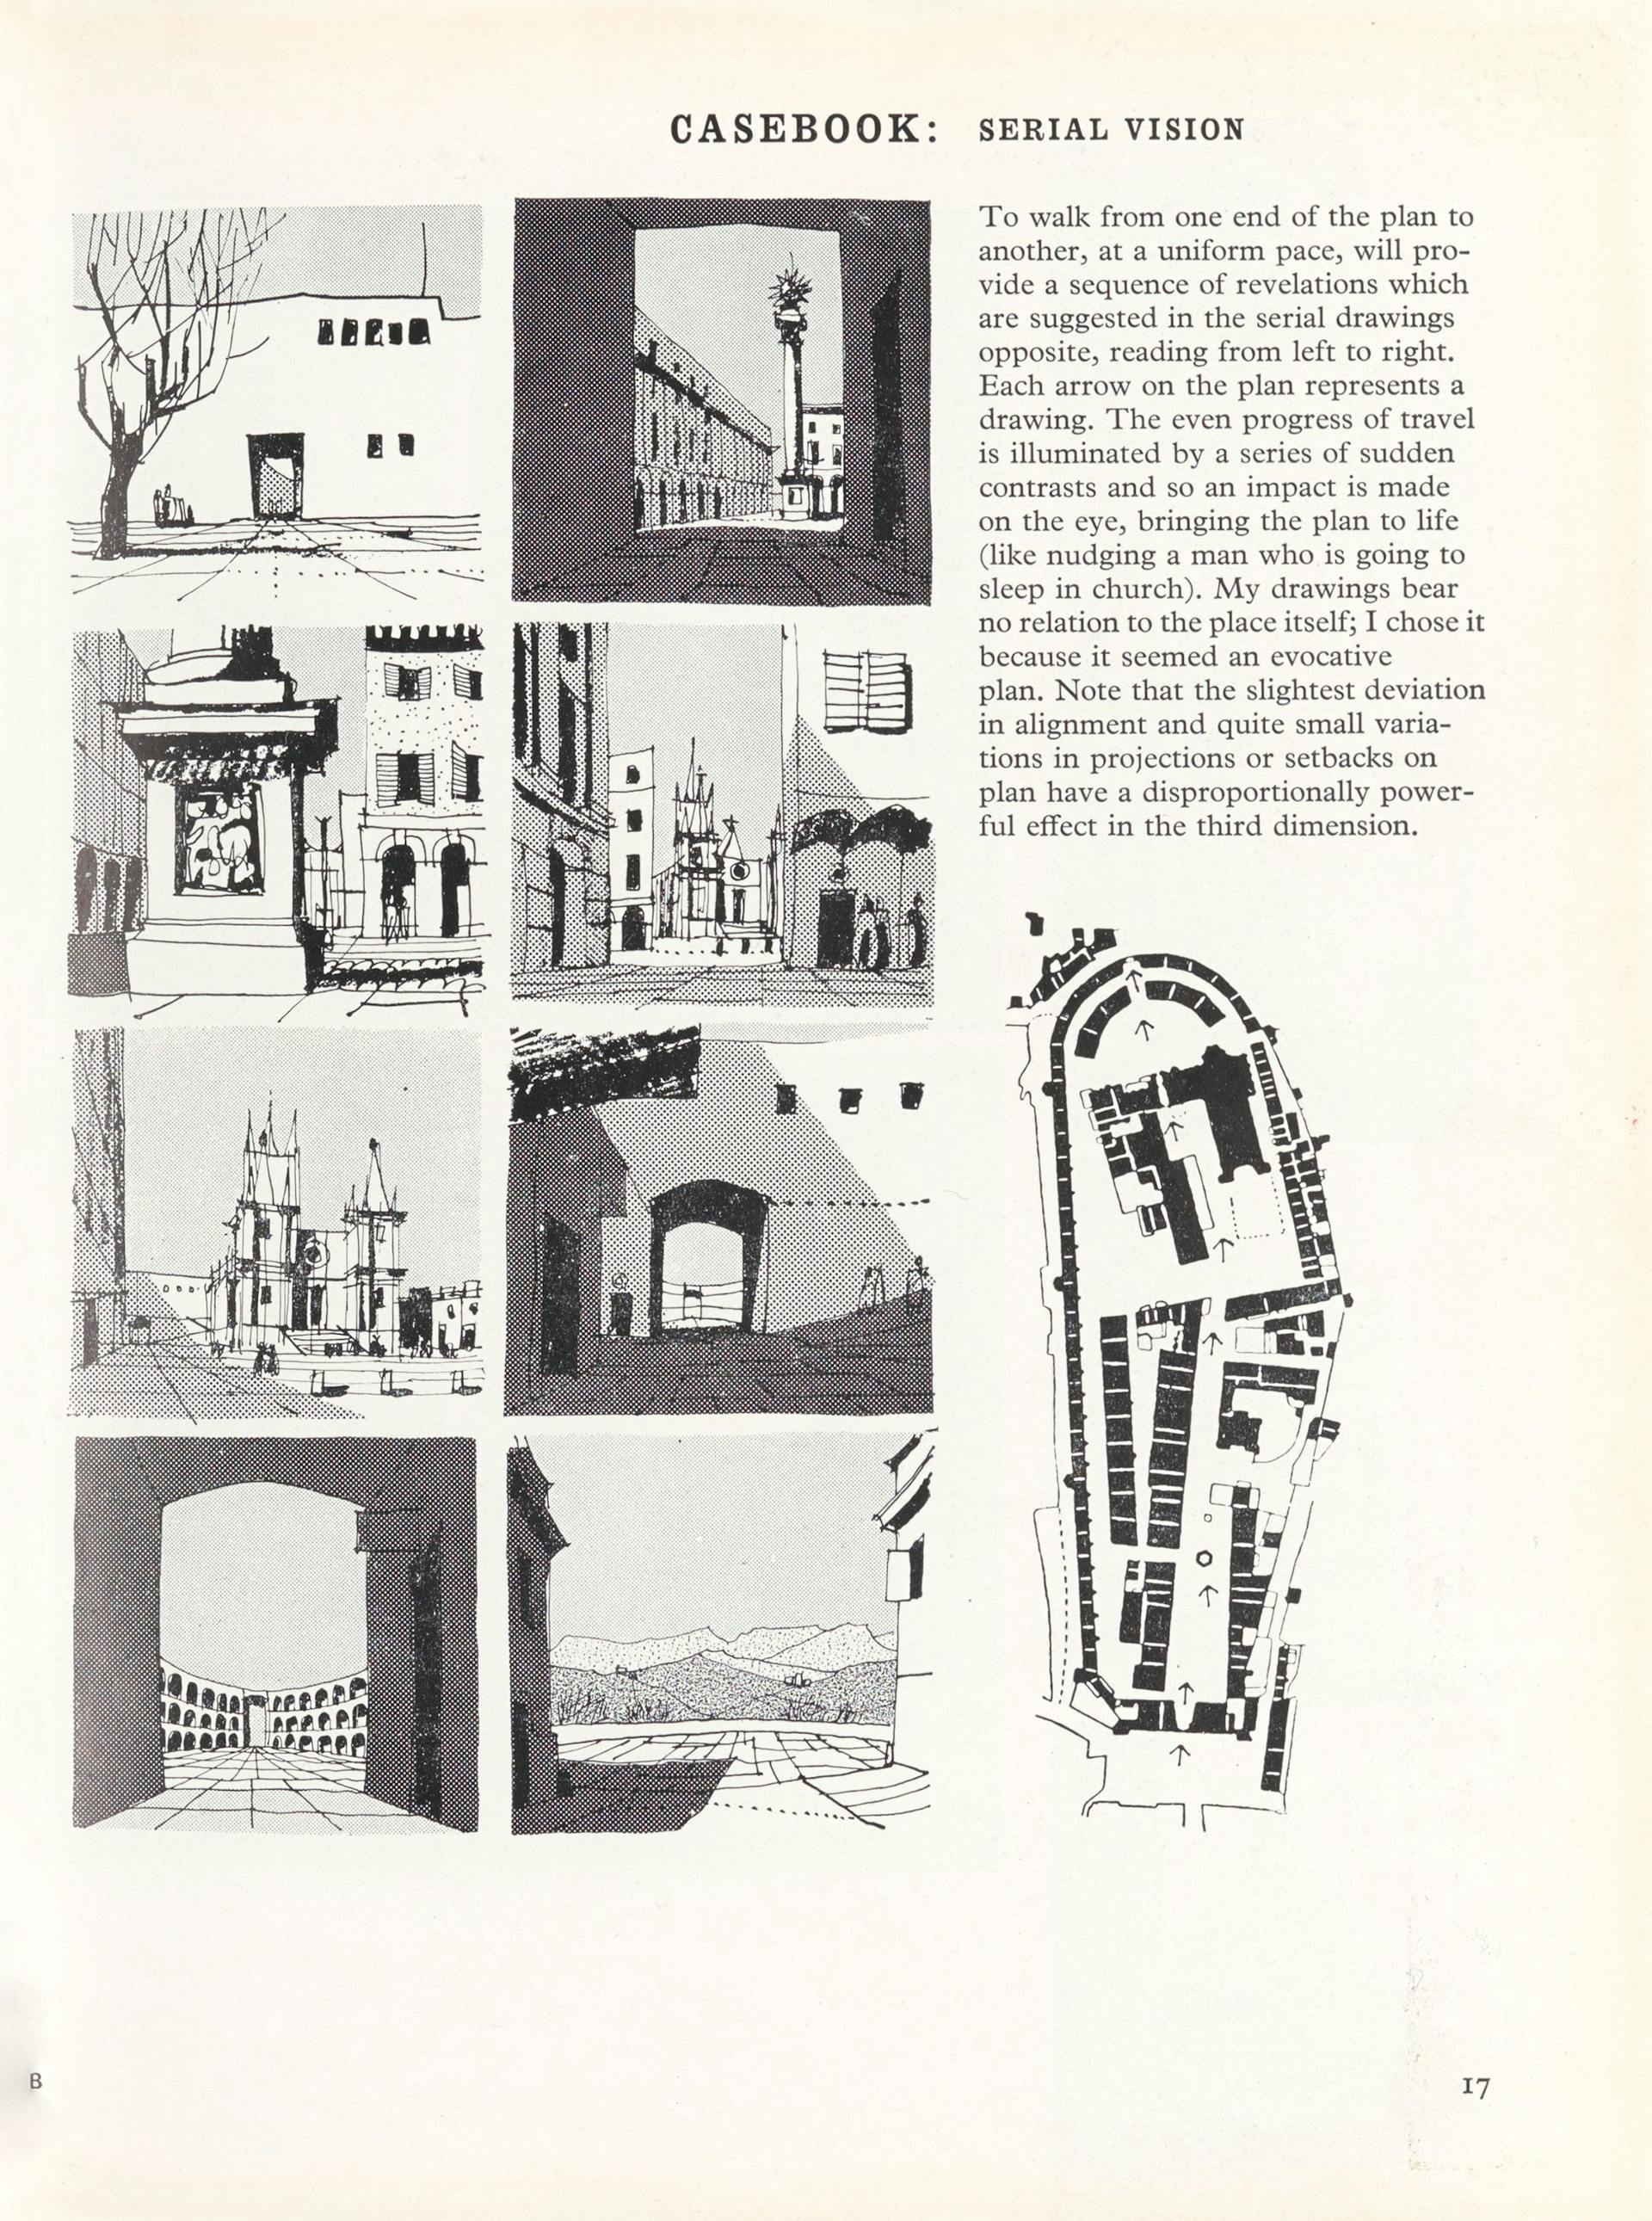 Gordon Cullen, ‘Serial Vision’, een visualisatie van opeenvolgende stadsbeelden, ook wel ‘Serials’ genoemd, vanuit het perspectief van de wandelaar. Cullen gebruikte de rasters van Zip-A-Tone voor de visualisatie van contrasten tussen licht en… 